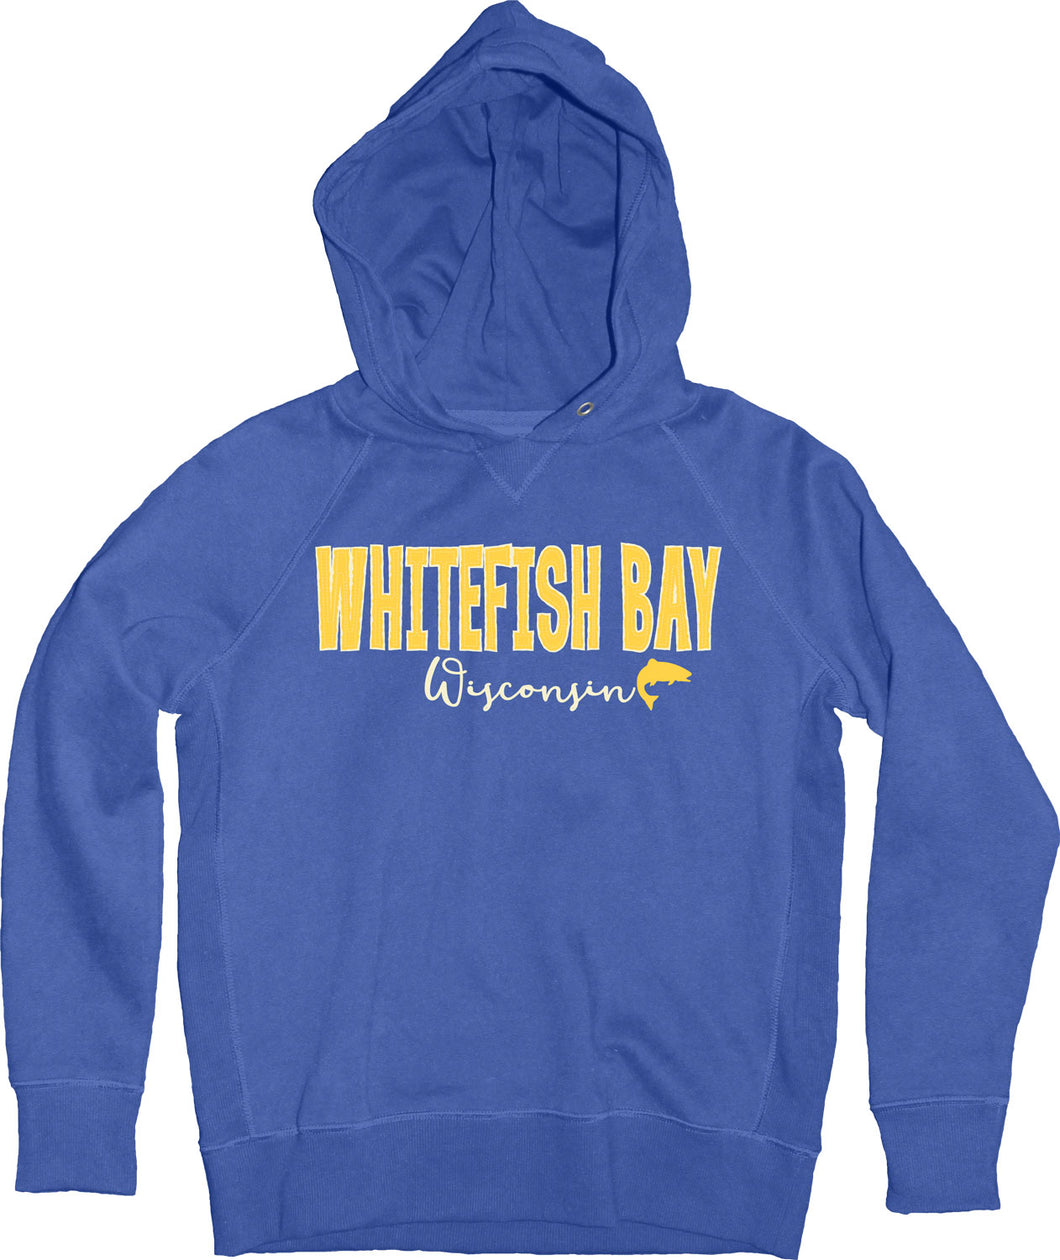 Whitefish Bay Kids Hoodie - Blue